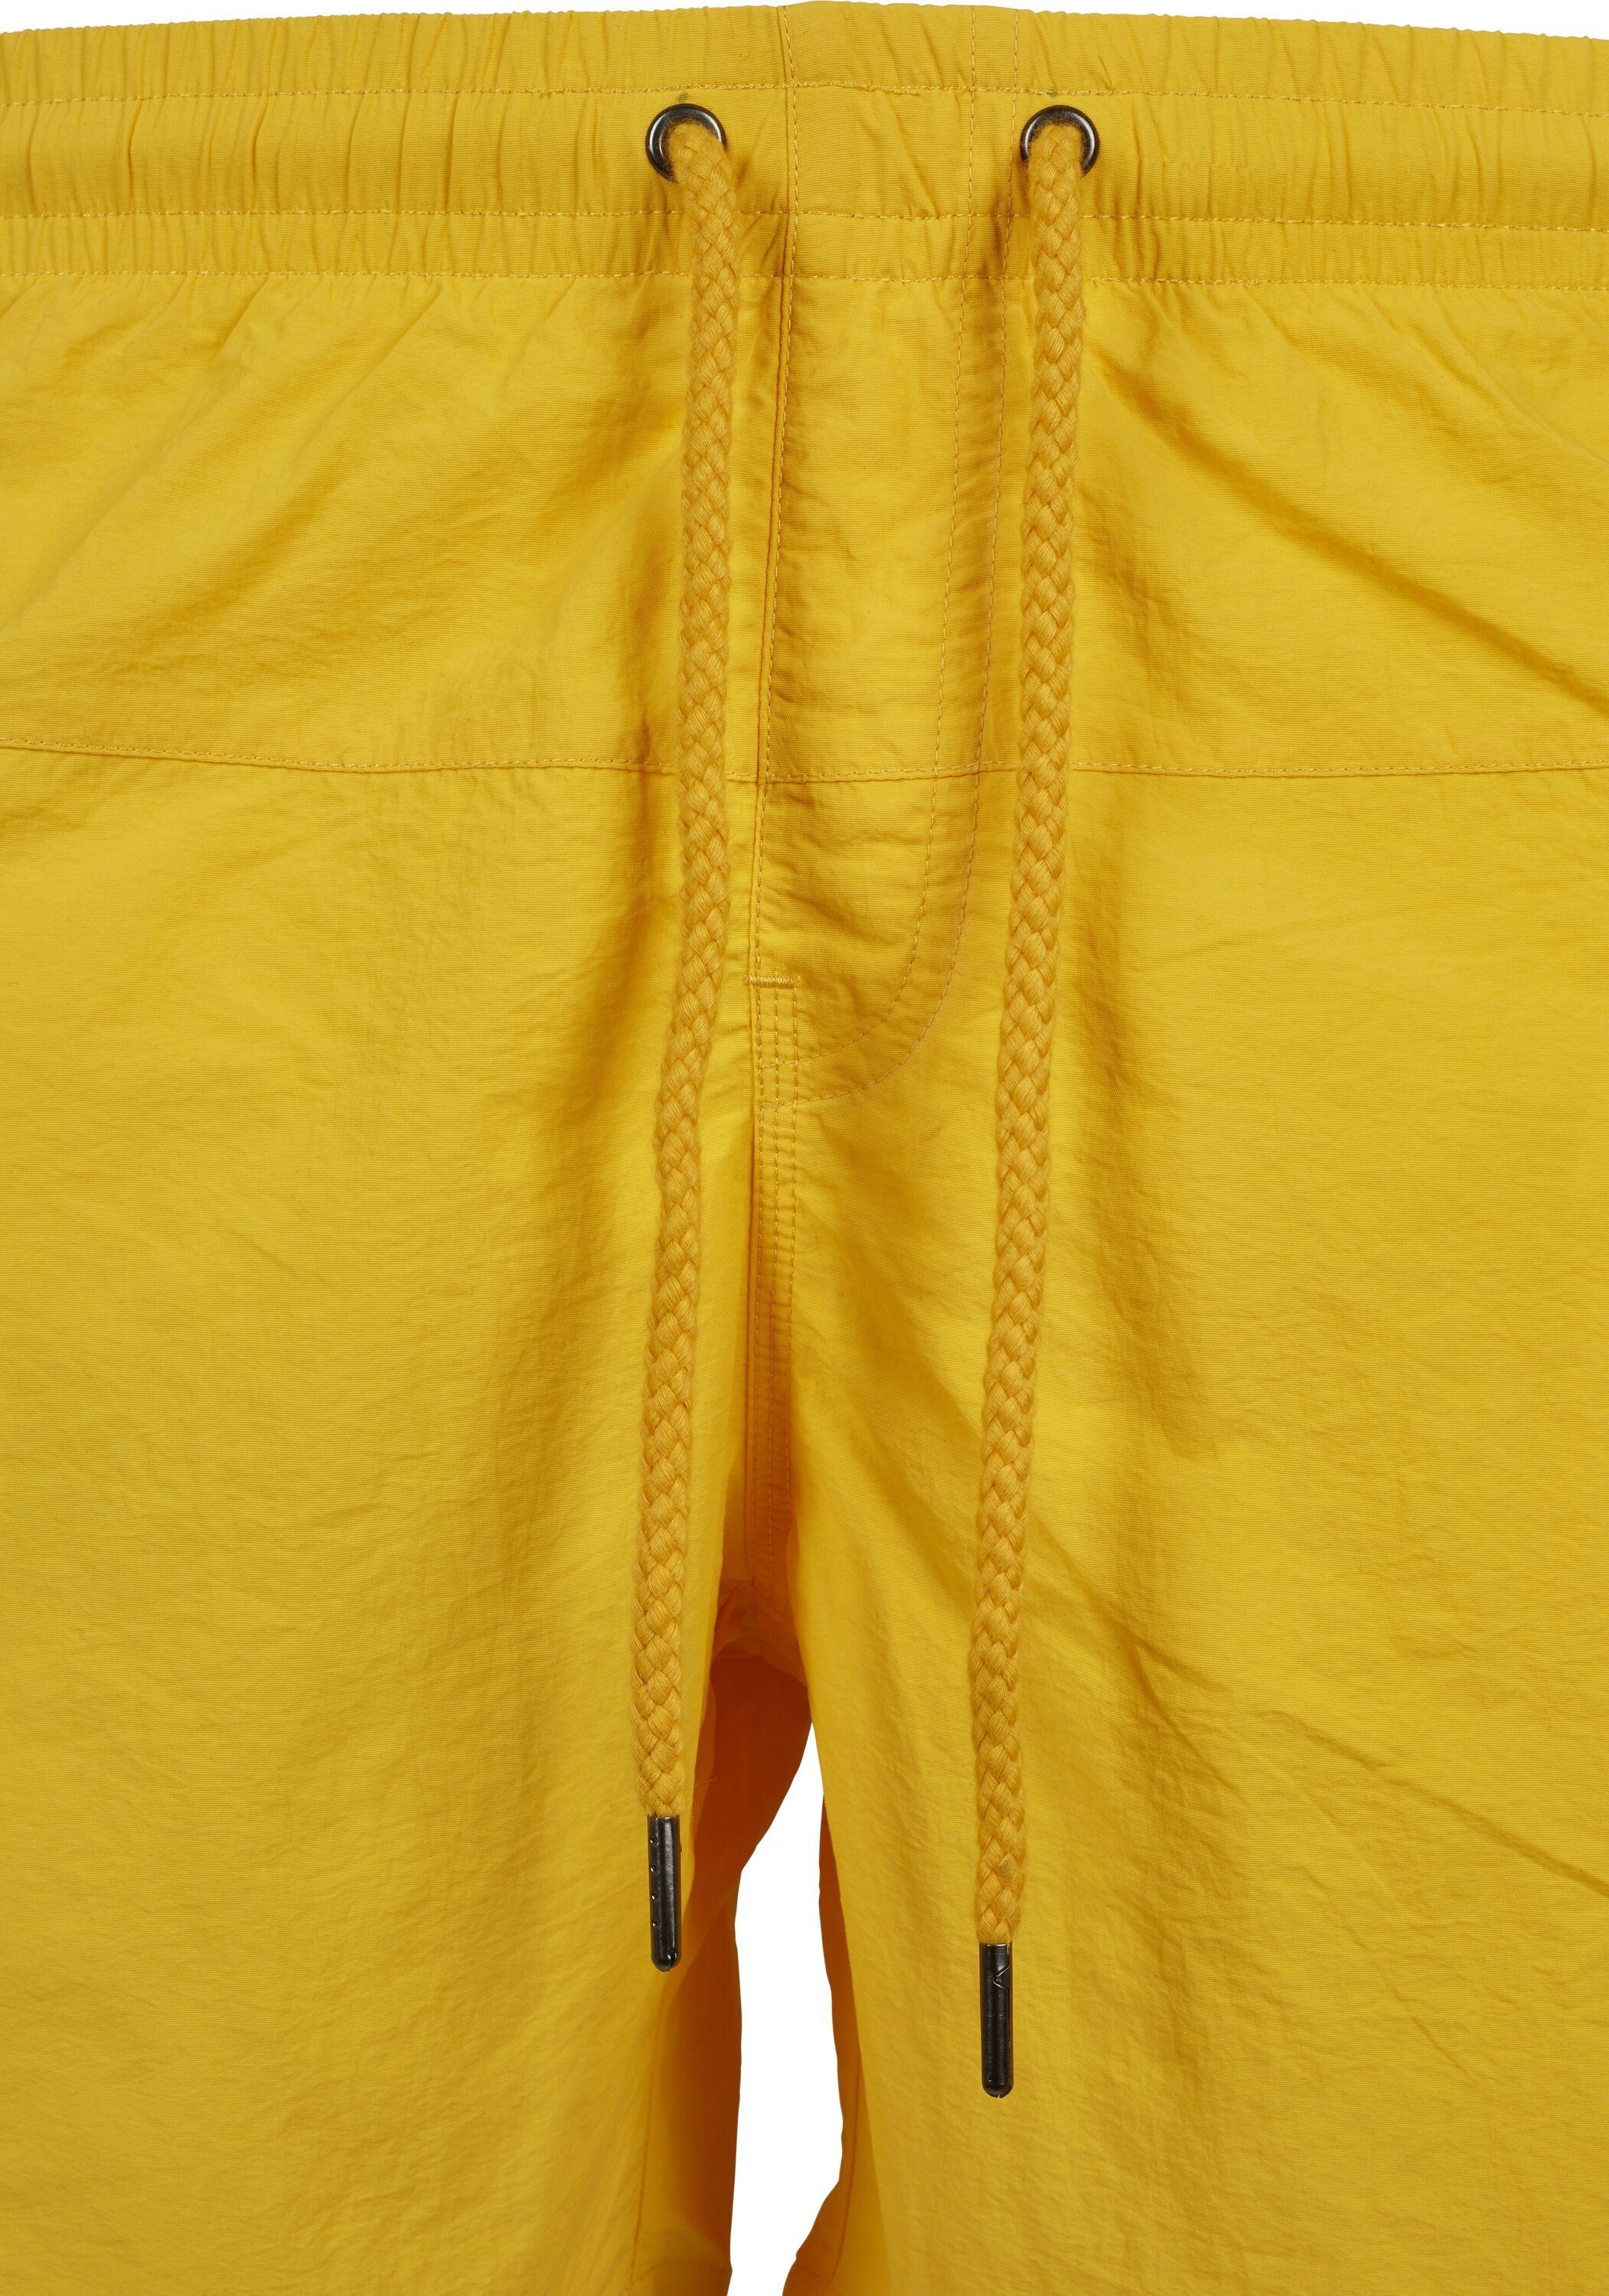 URBAN yellow Badeshorts Shorts CLASSICS Herren Swim chrome